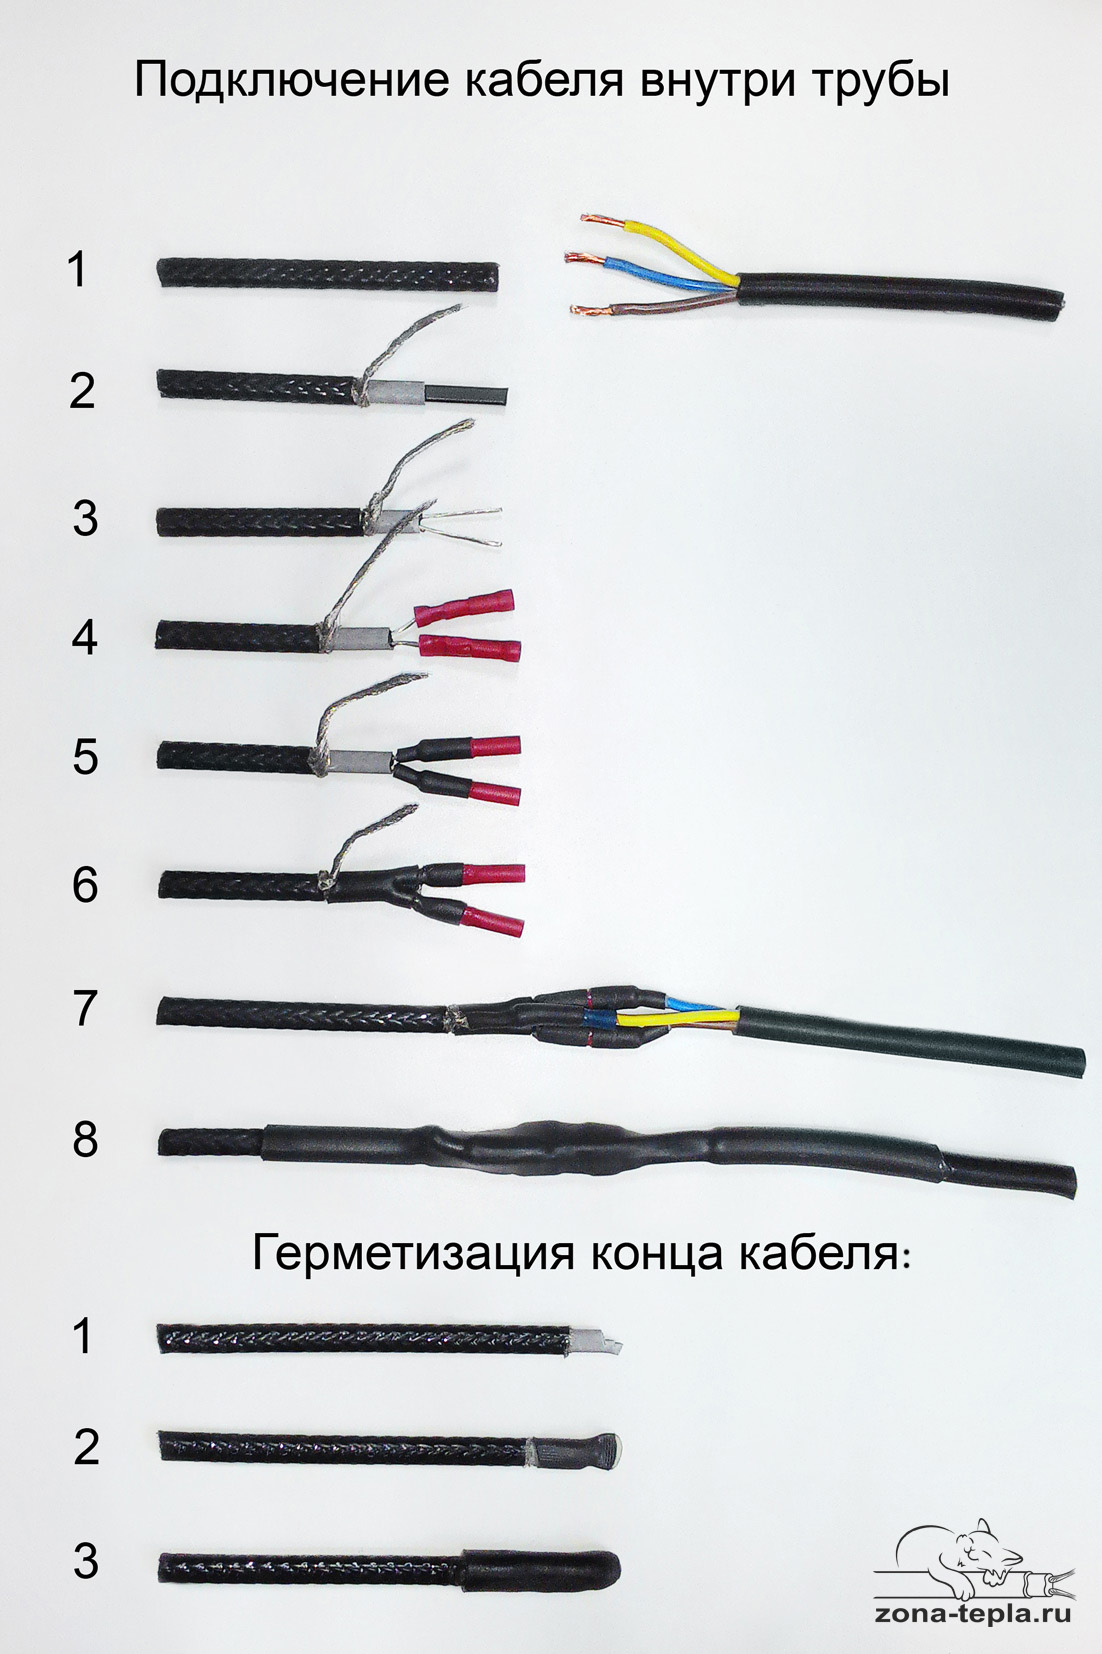 Как подключить греющий кабель: саморегулирующийся и резистивный виды, схема, инструкция, видео, фото